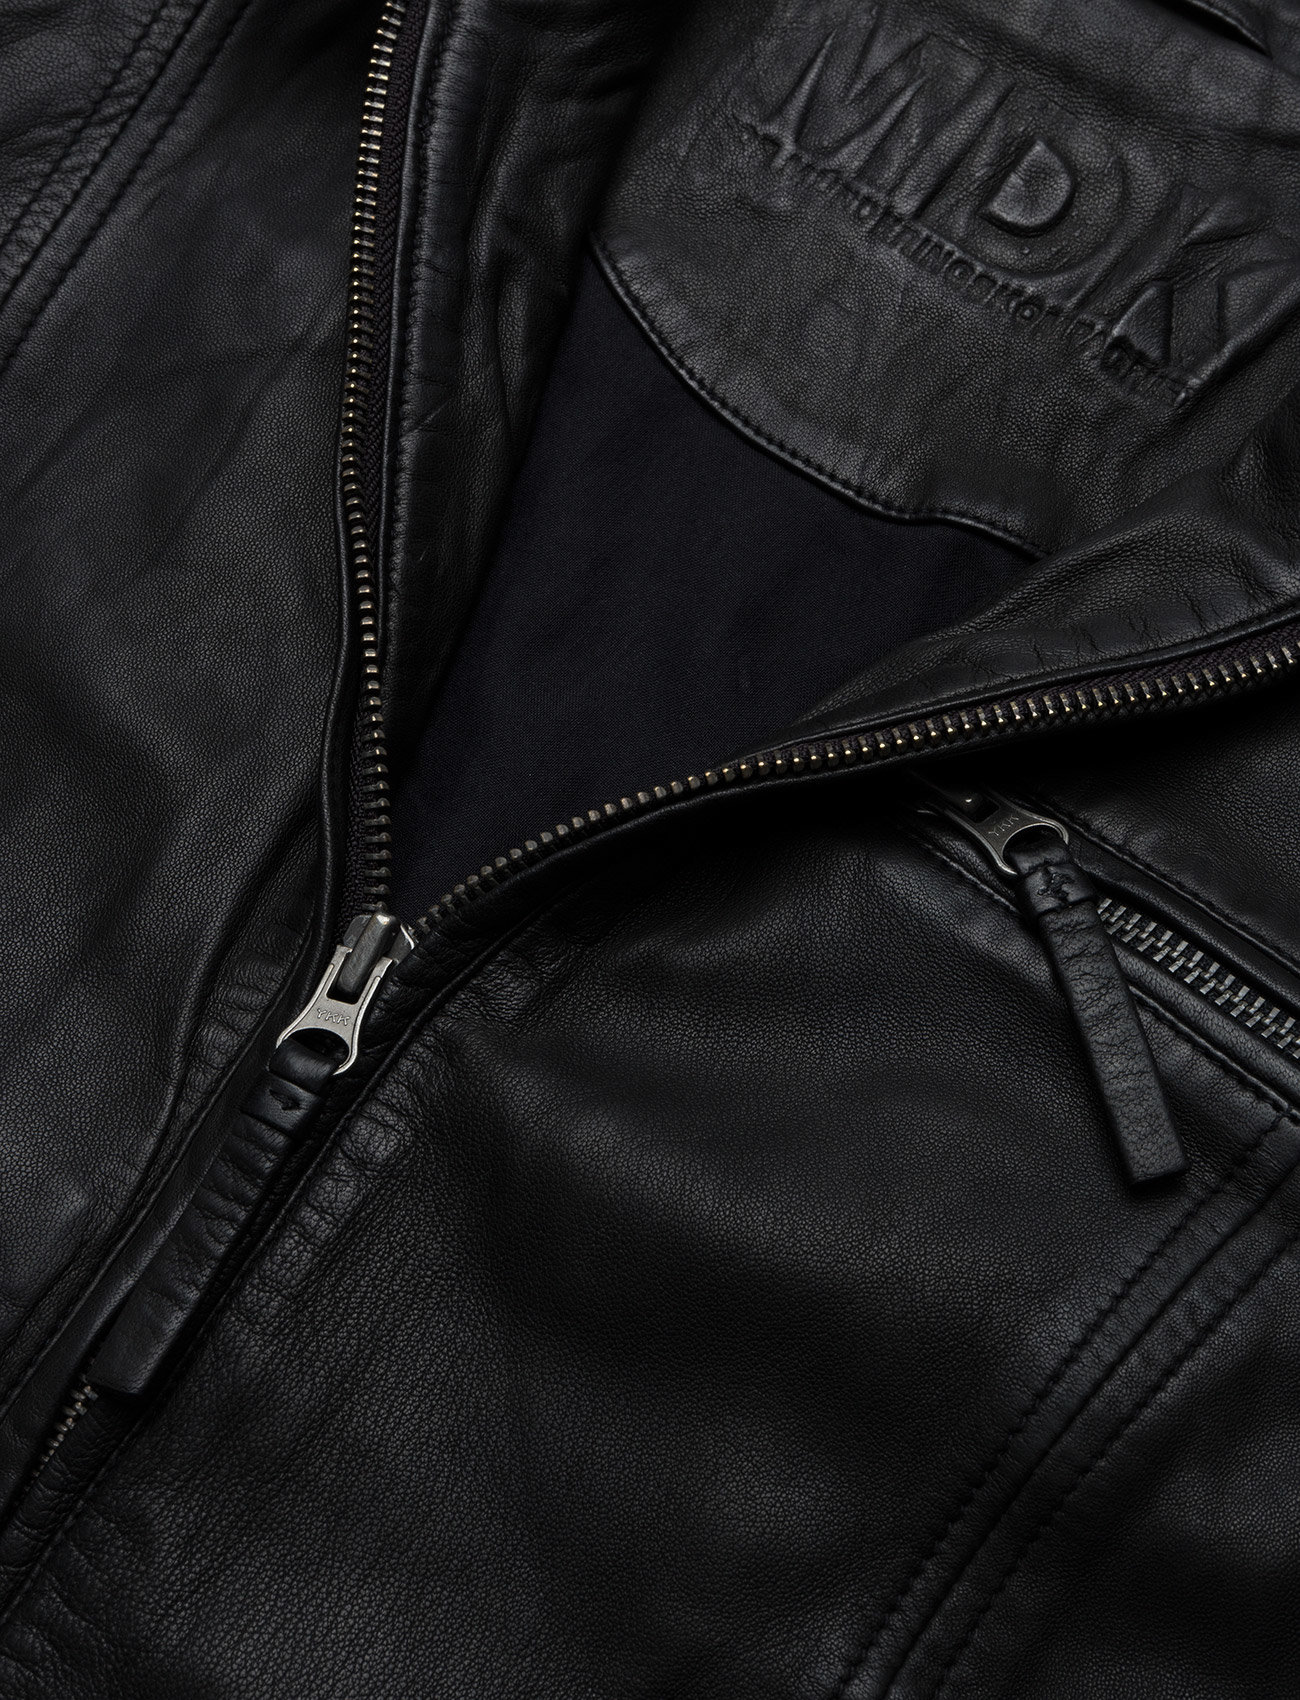 MDK / Munderingskompagniet - Karla leather jacket - leather jackets - black - 1